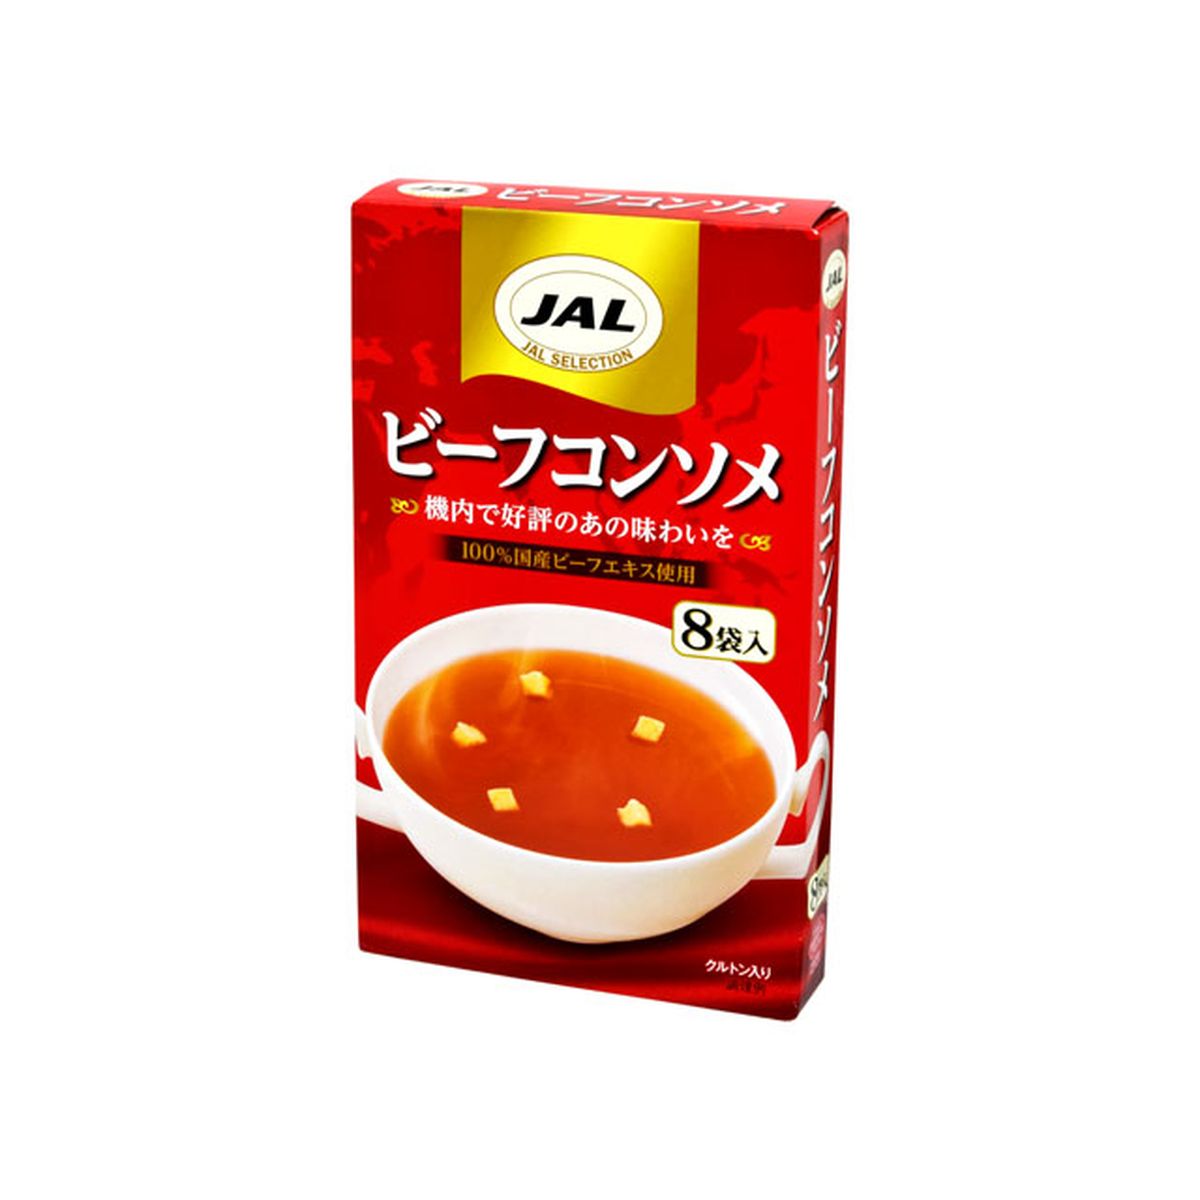 【5個入り】JAL ビーフコンソメ 5g